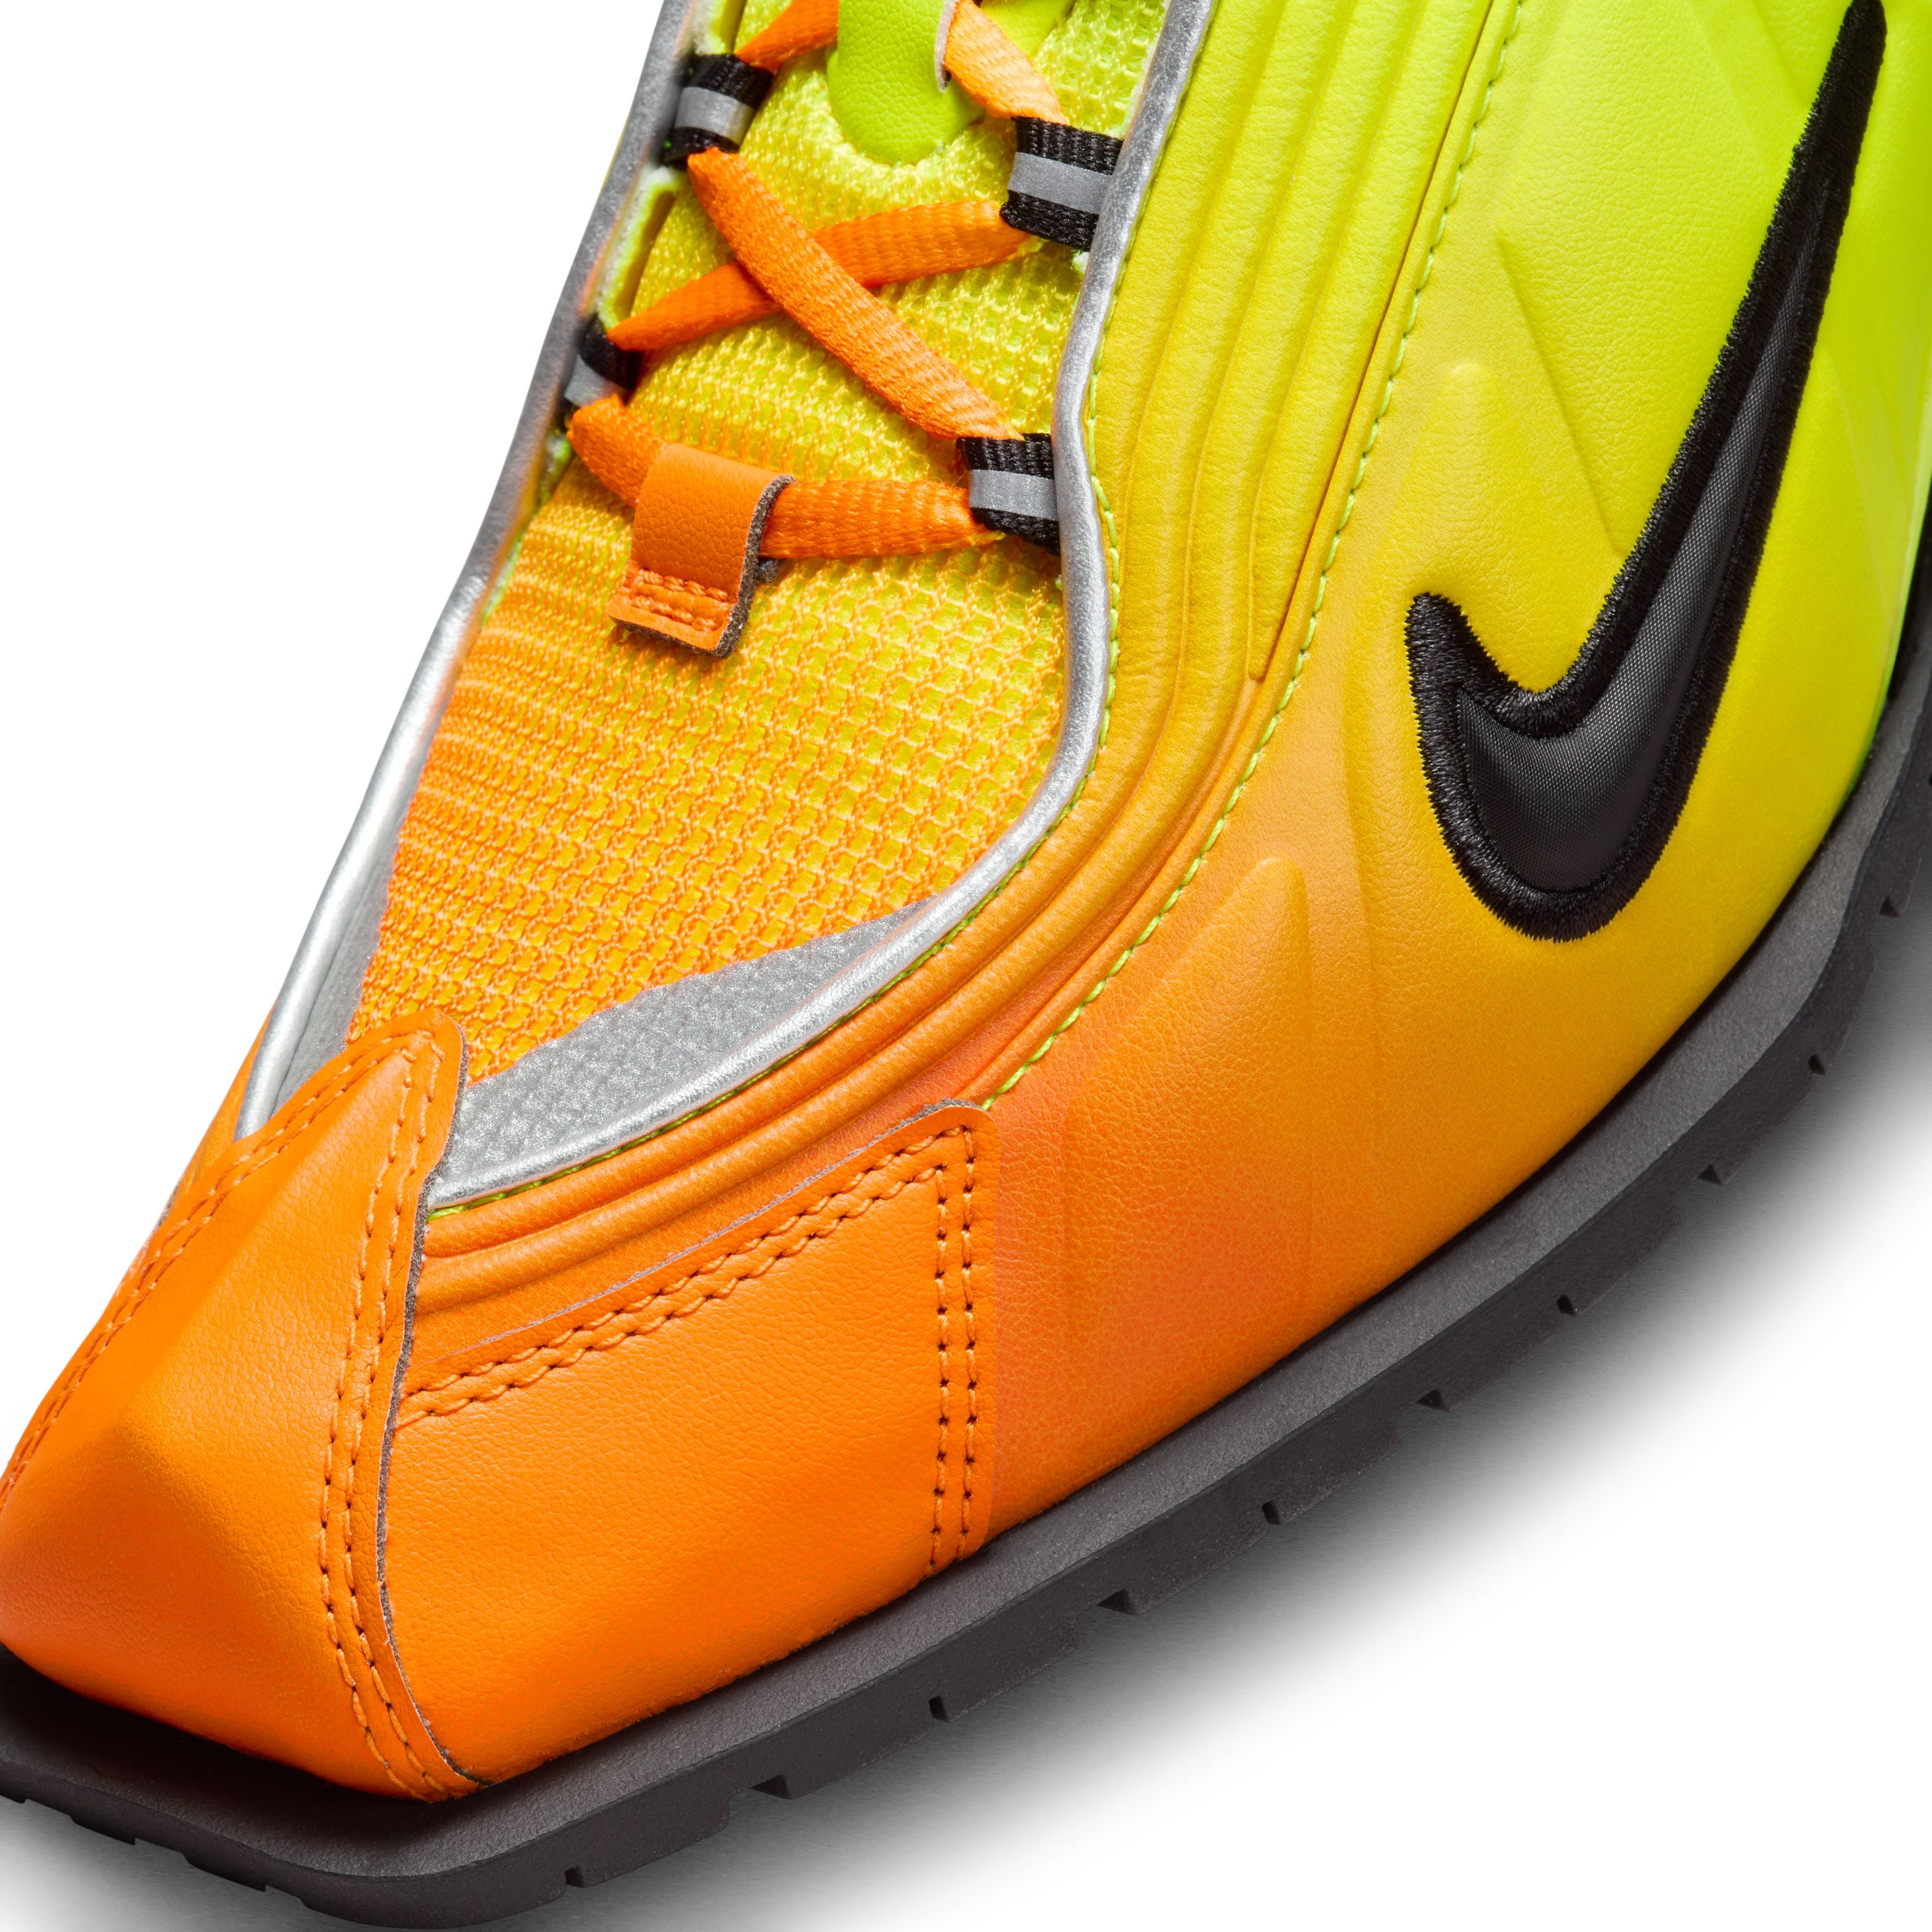 Martine Rose x Nike Shox MR4 Mules - Safety Orange/Metallic Silver/Black